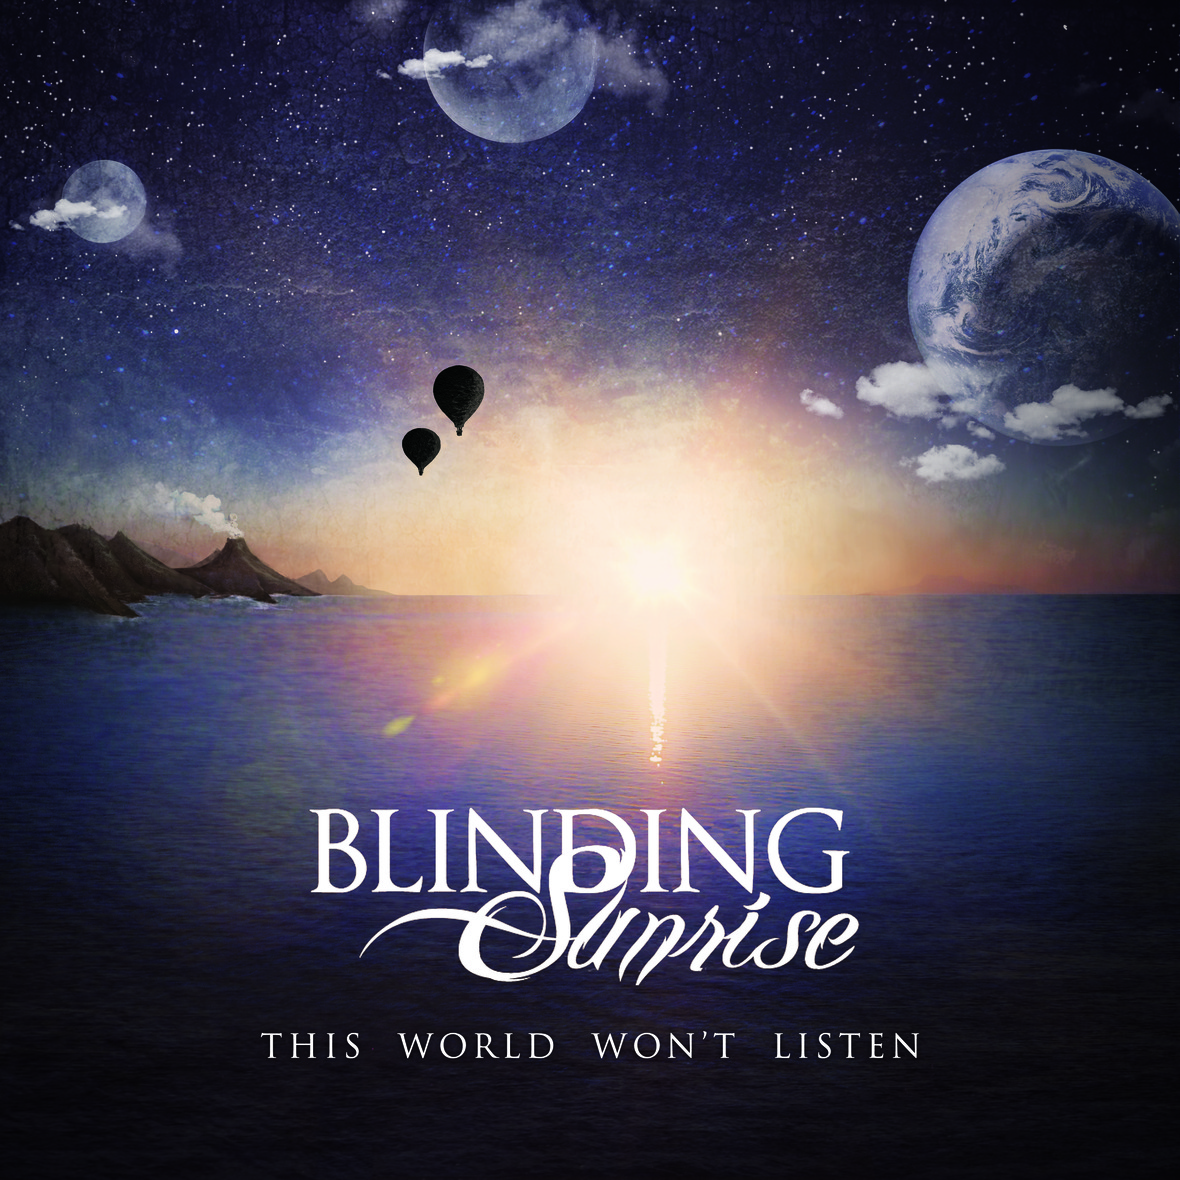 Blinding_Sunrise_cd_cover